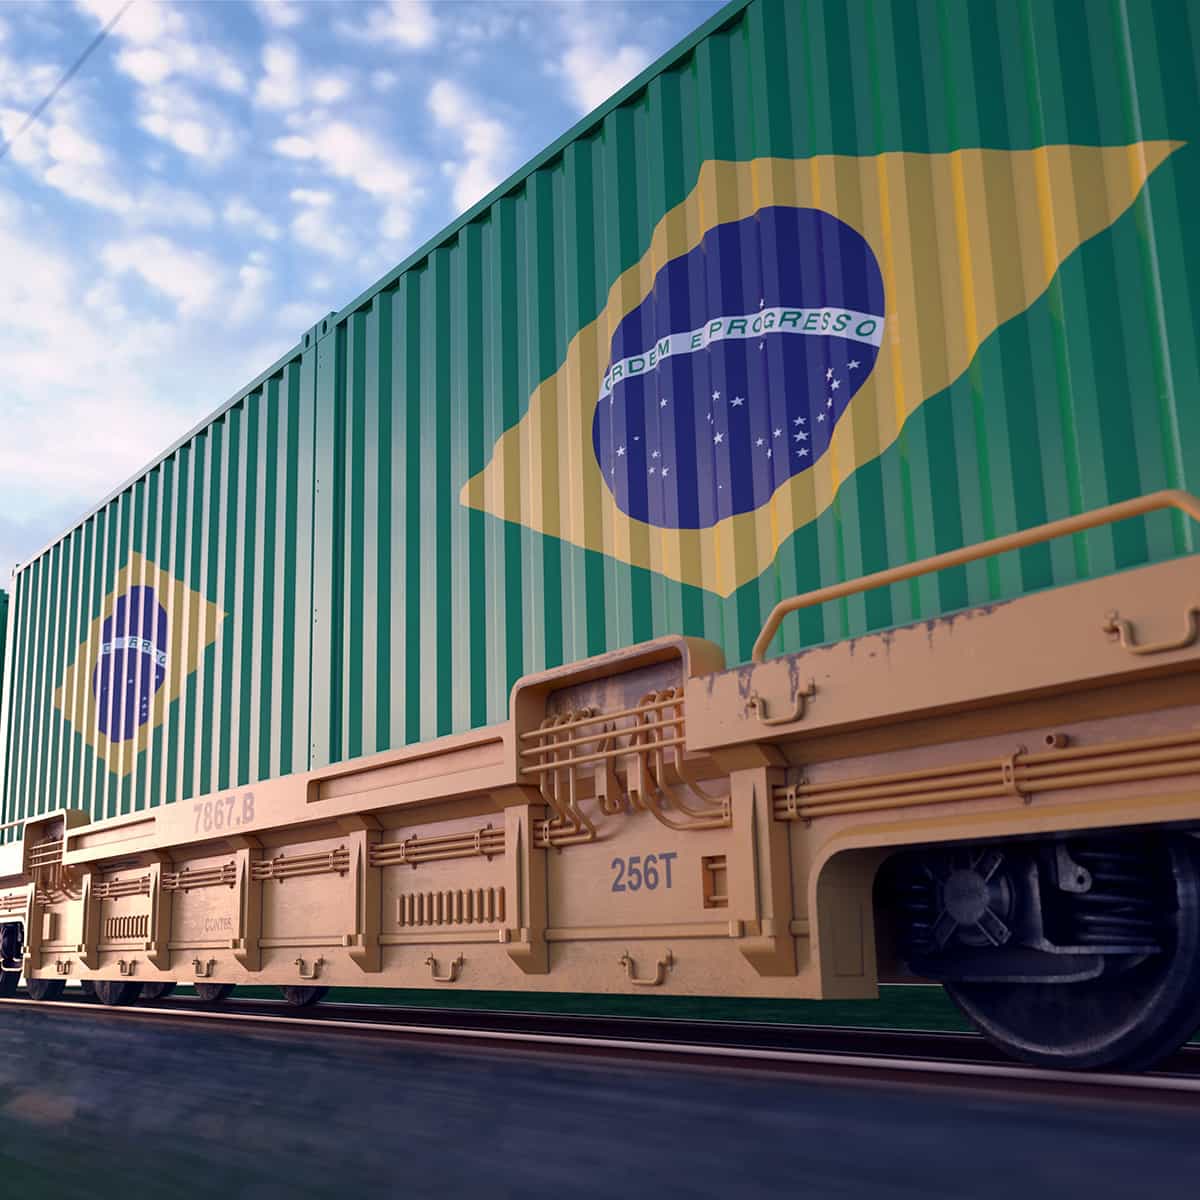                         Transportcontainer mit brasilianischer Flagge auf einem Güterzug